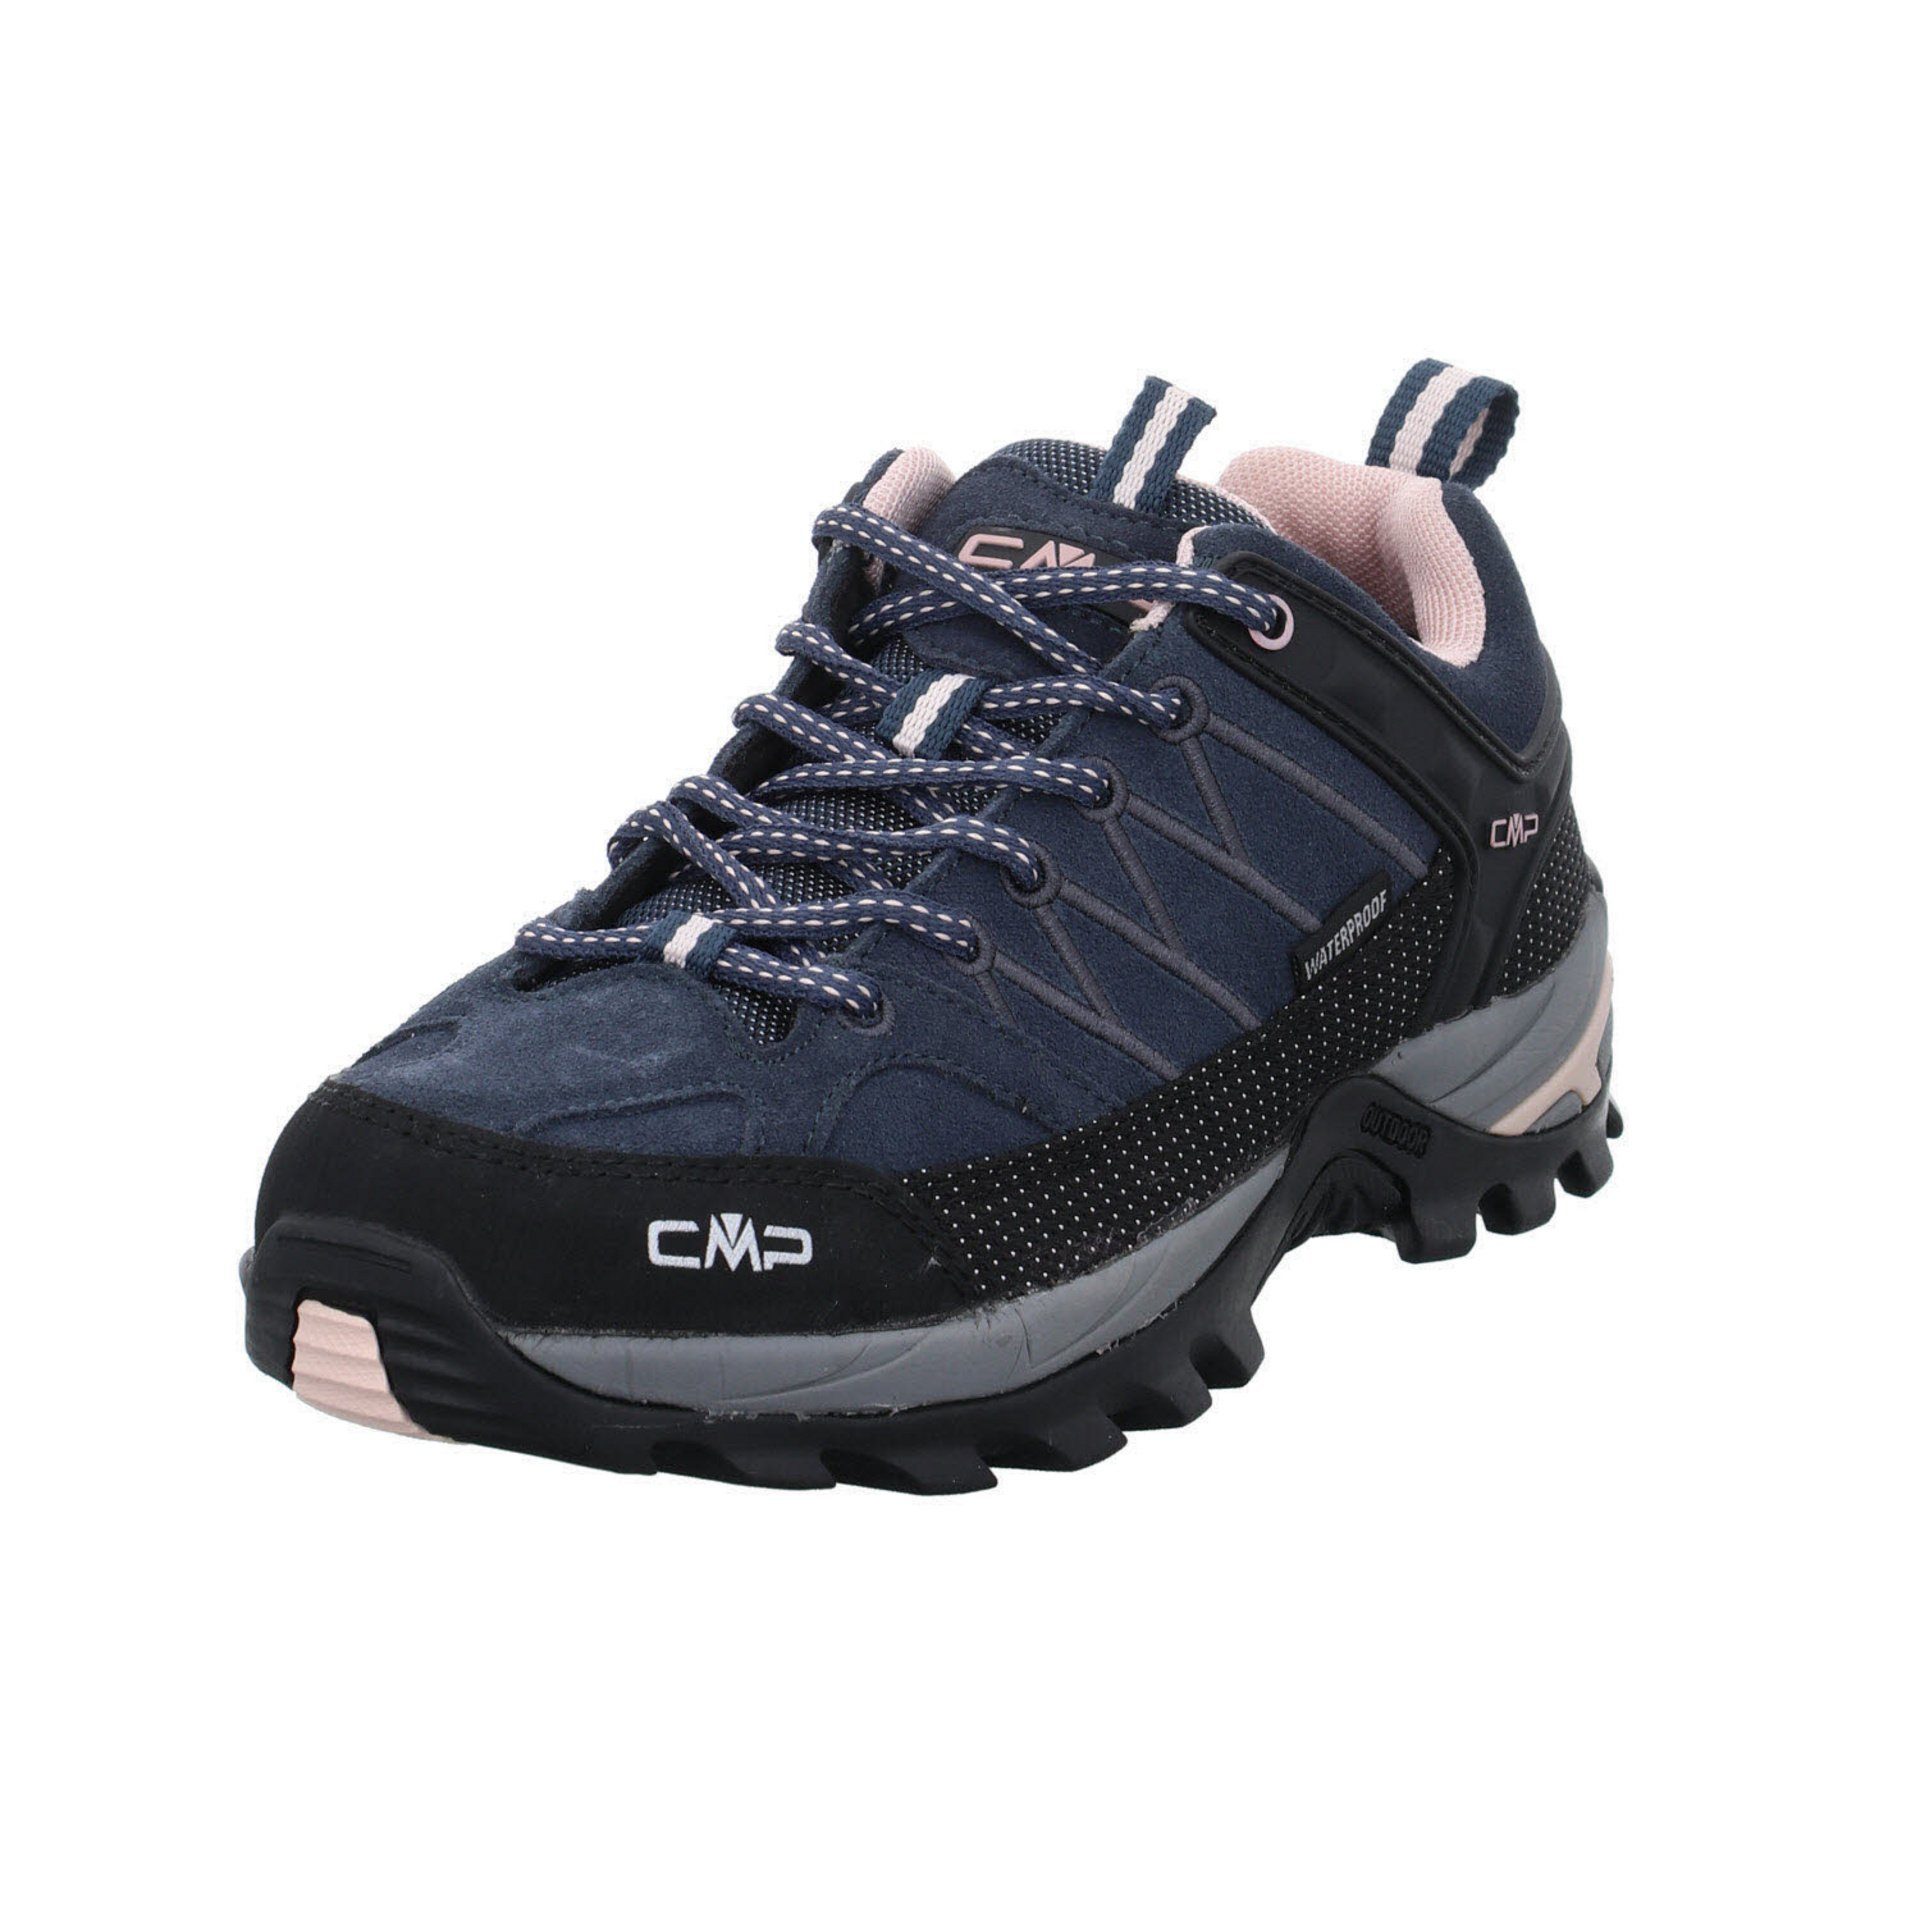 Leder-/Textilkombination Low Schuhe (201) Outdoorschuh Damen anthrazit Outdoor Outdoorschuh CMP Riegel